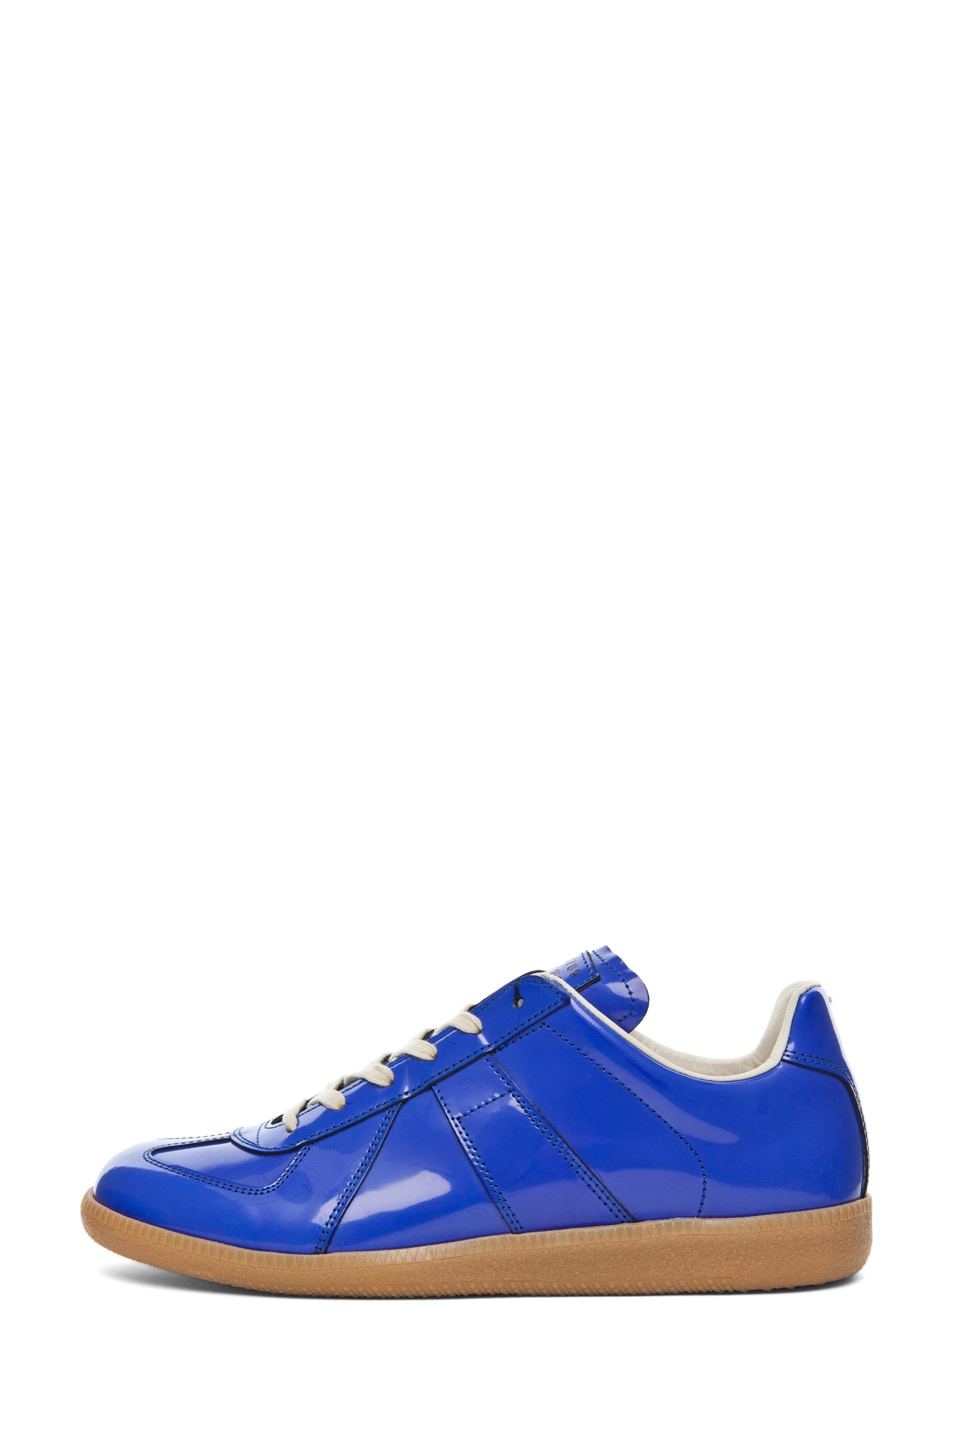 Maison Margiela Rubber Sneaker in Blue | FWRD